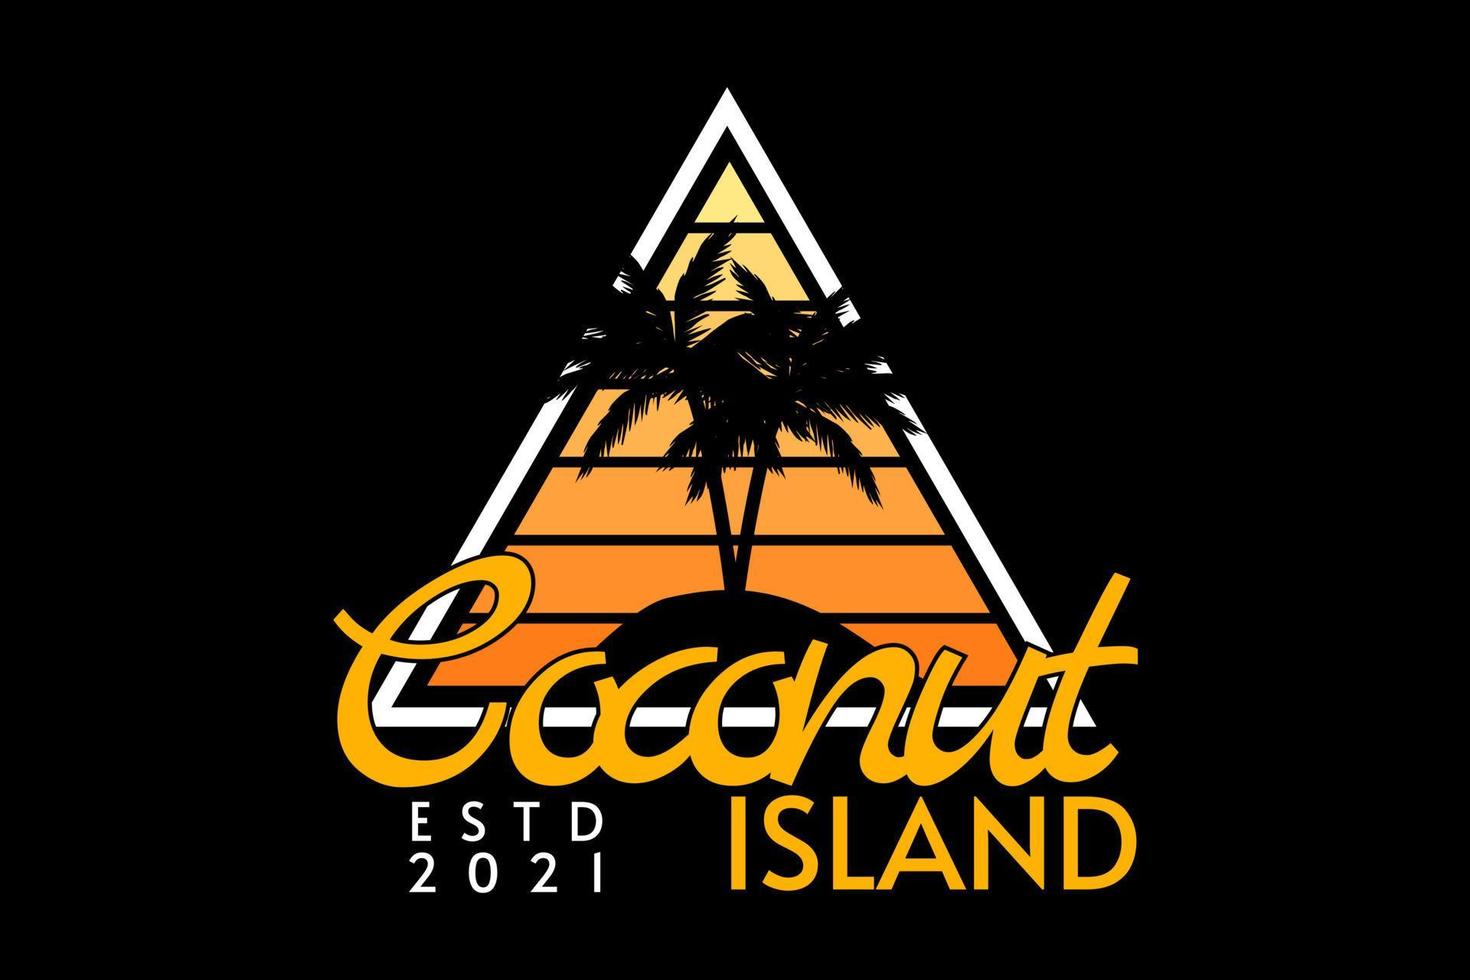 coconut island silhouette retro design vector